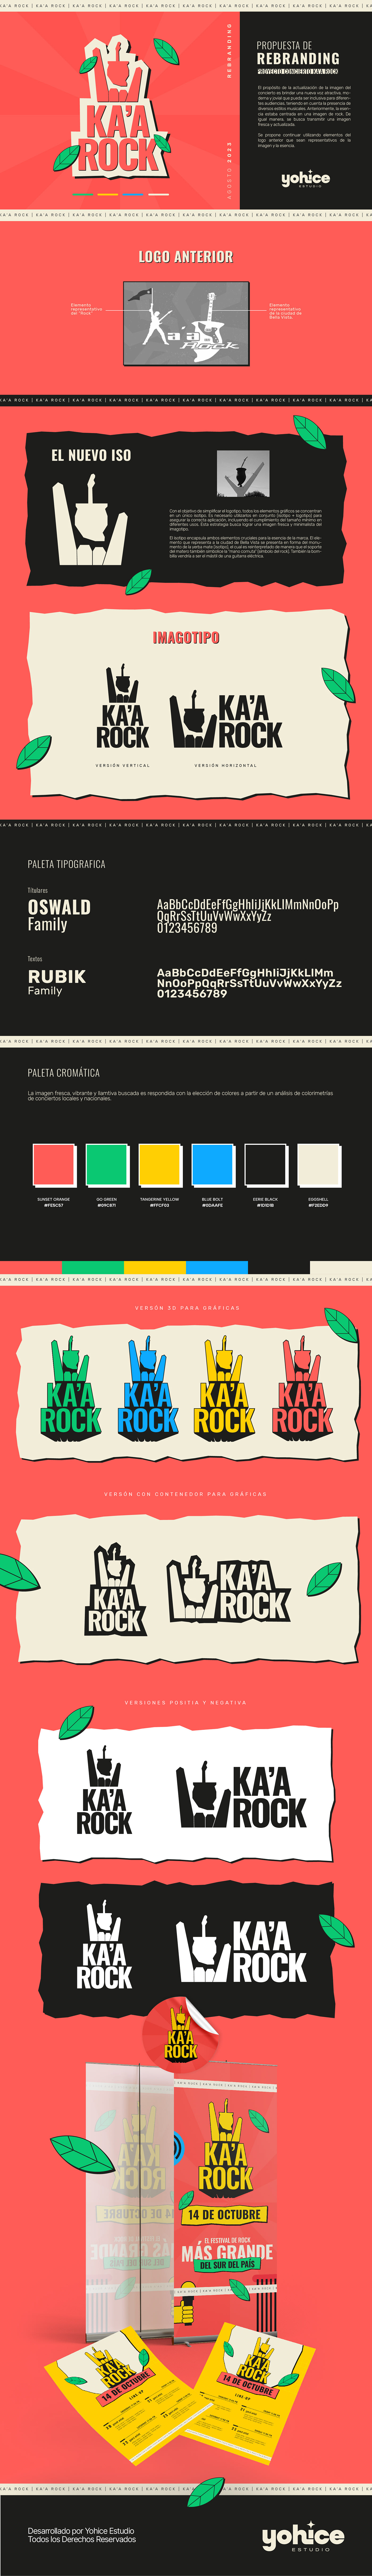 Rebranding para el Ka'a Rock.